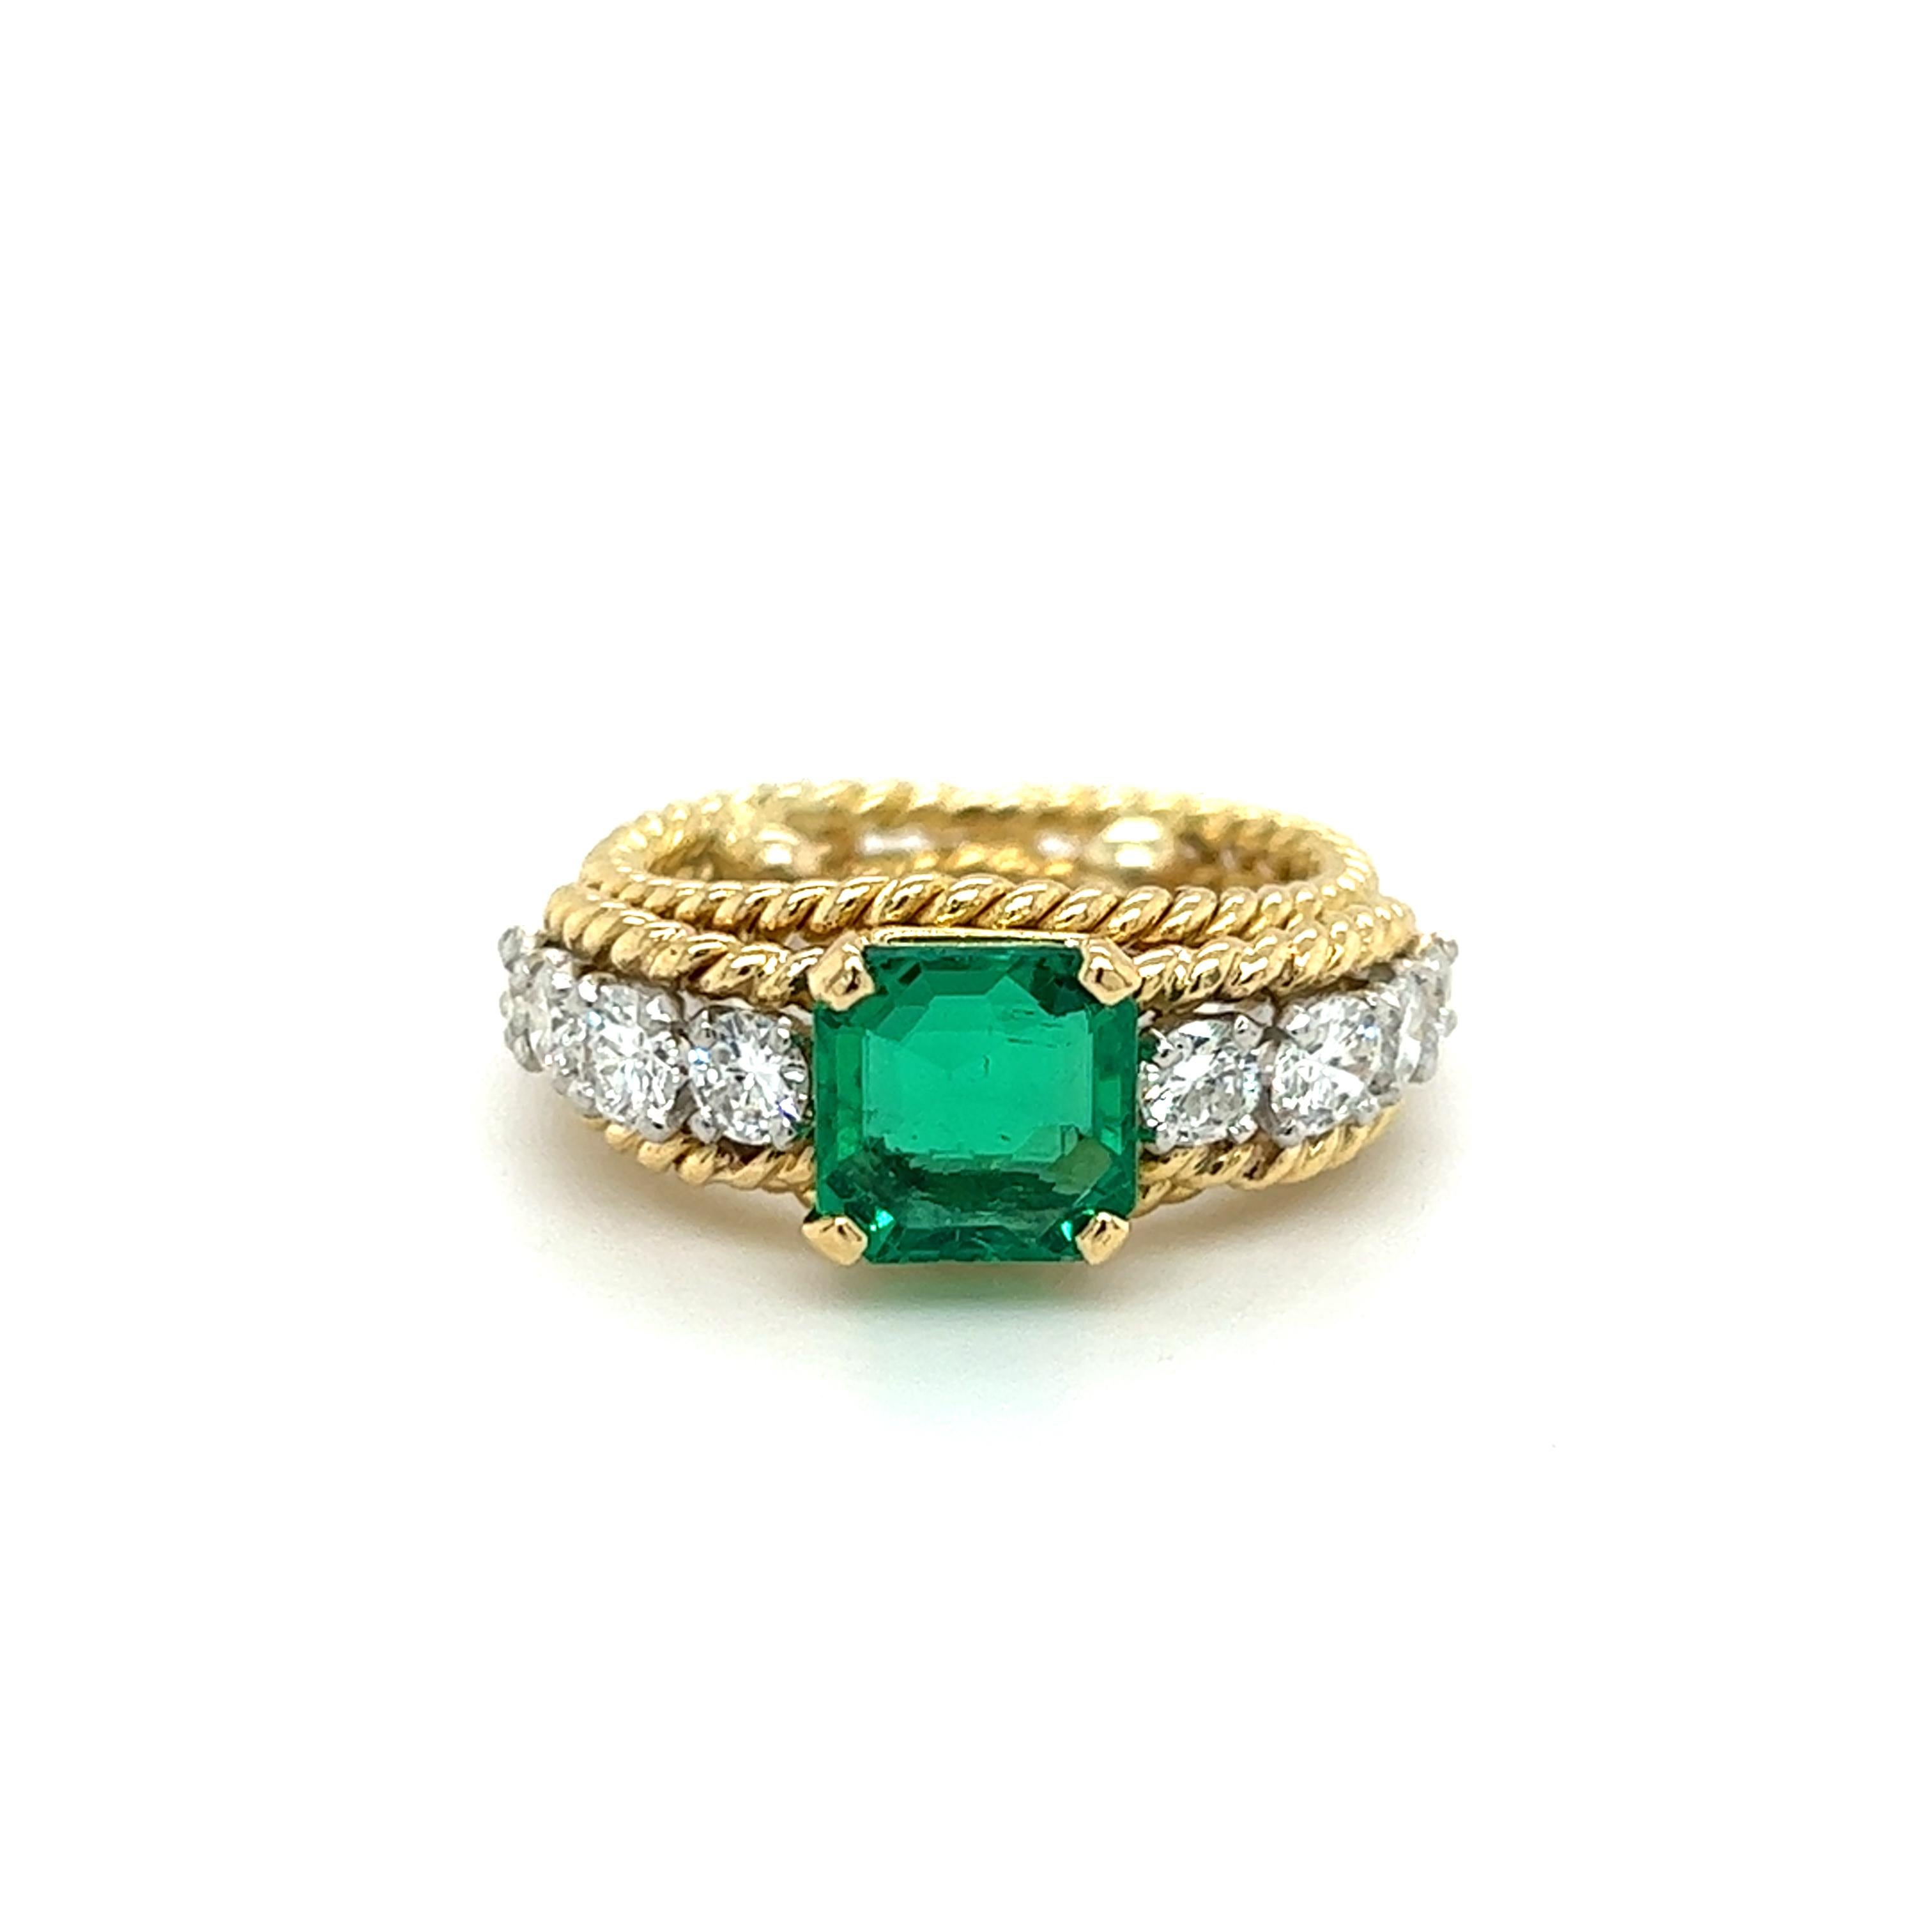 Ein 1970er Jahre 18 Karat Gelb- und Weißgold Seil Stil Ring mit einem (1) 2,77 Karat quadratischen Smaragd geschnitten, und acht (8) runde Diamanten im Brillantschliff, etwa 0,75 Karat Gesamtgewicht mit passenden H / I Farbe und SI1 Klarheit. Der